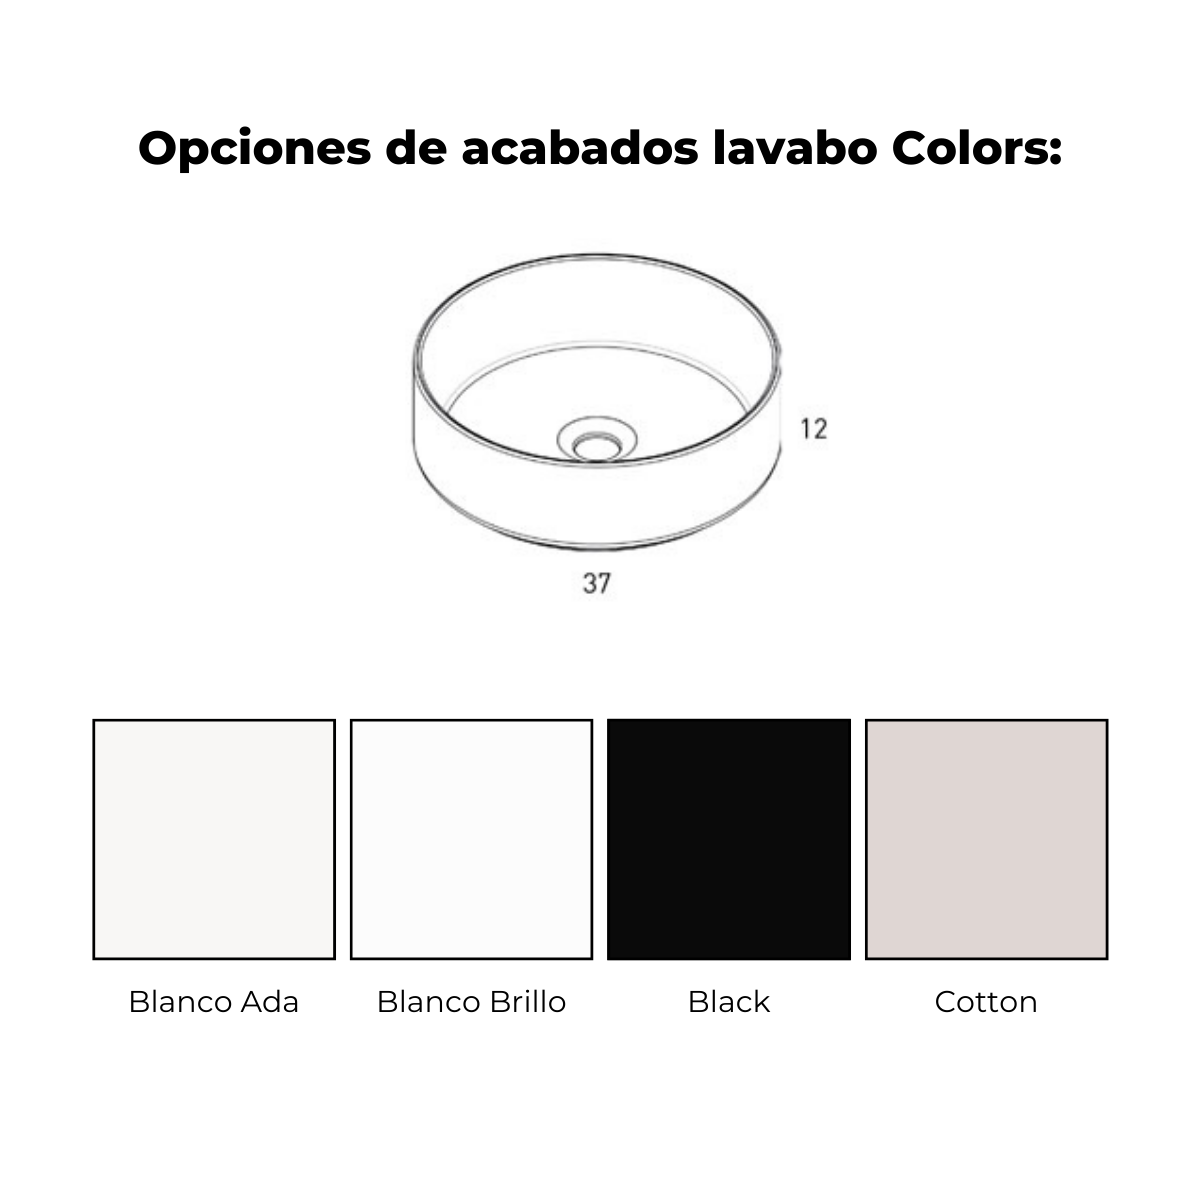 Lavabo colors cotton 1c